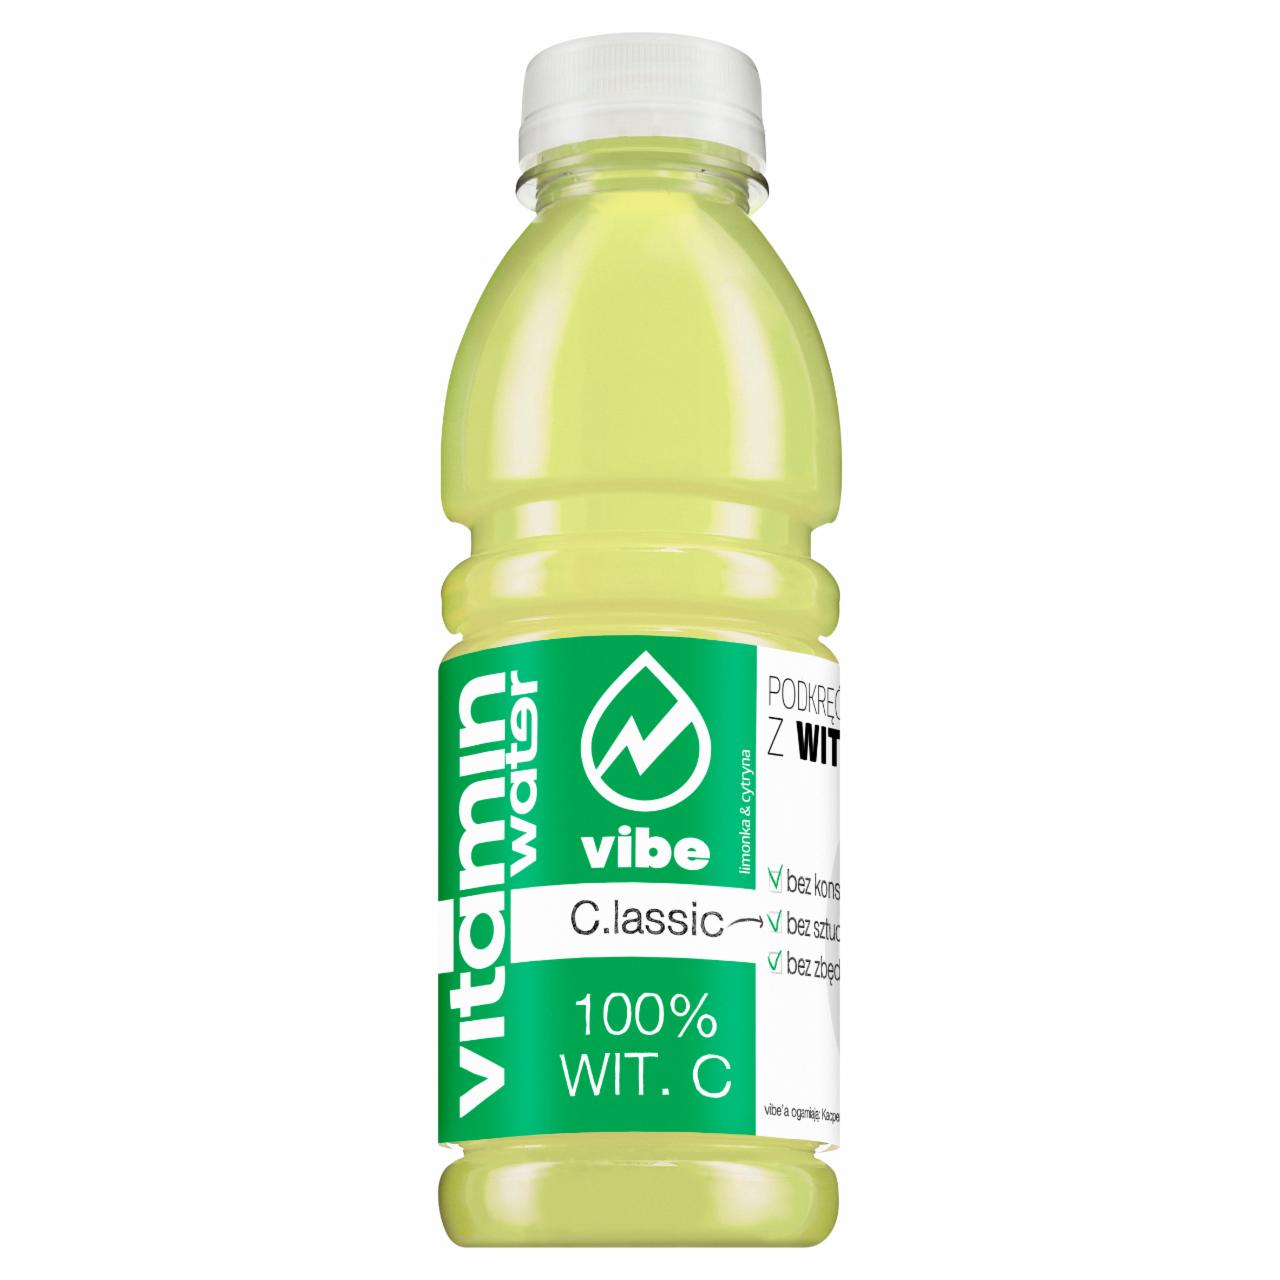 Zdjęcia - Vibe Vitamin Water C.lassic zawierający 100% Wit. C Napój niegazowany 500 ml